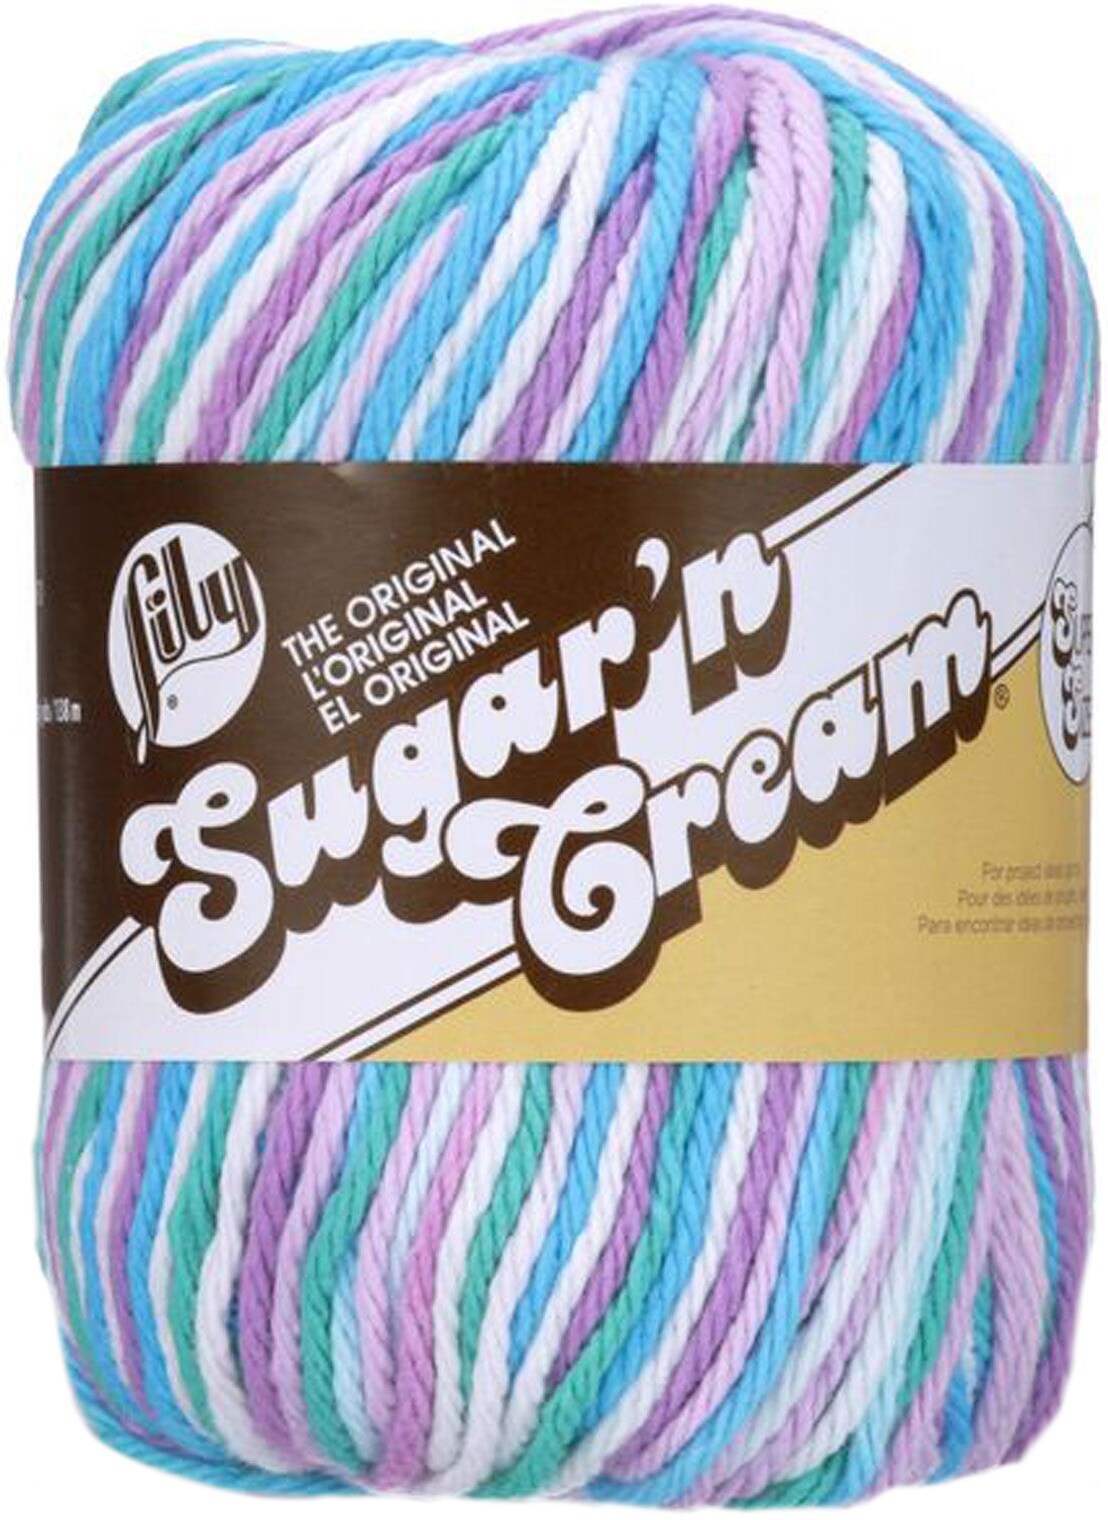  Lily Sugar 'N Cream Super Size Yarn 100% Cotton 3 oz